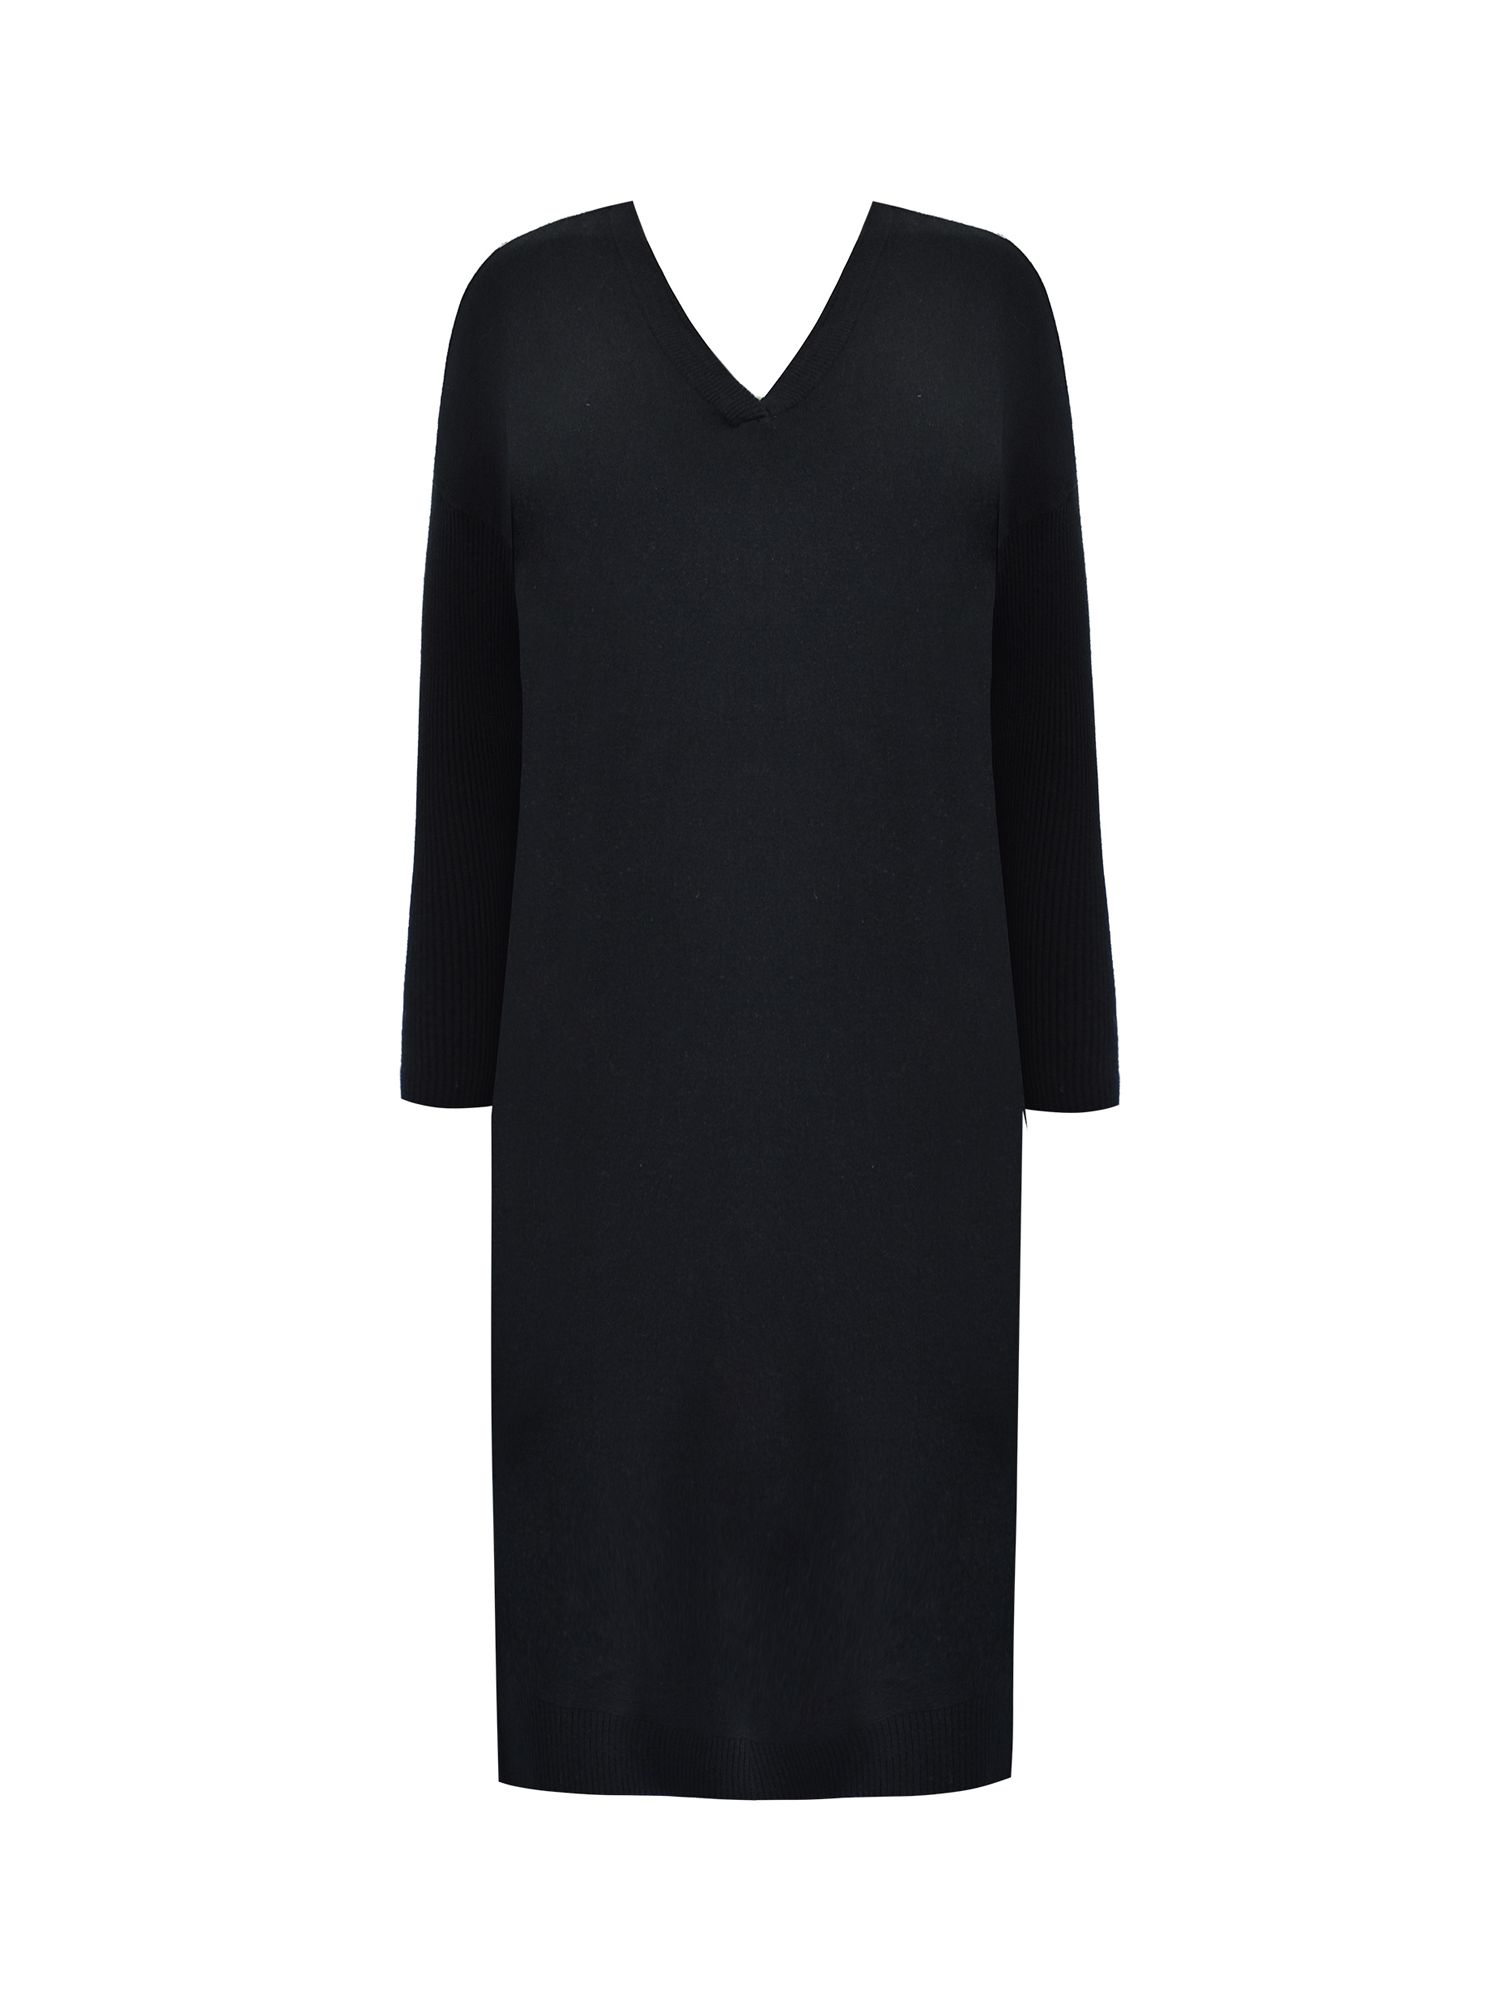 Buy Live Unlimited Curve Cashmere Blend V-neck Dress, Black Online at johnlewis.com